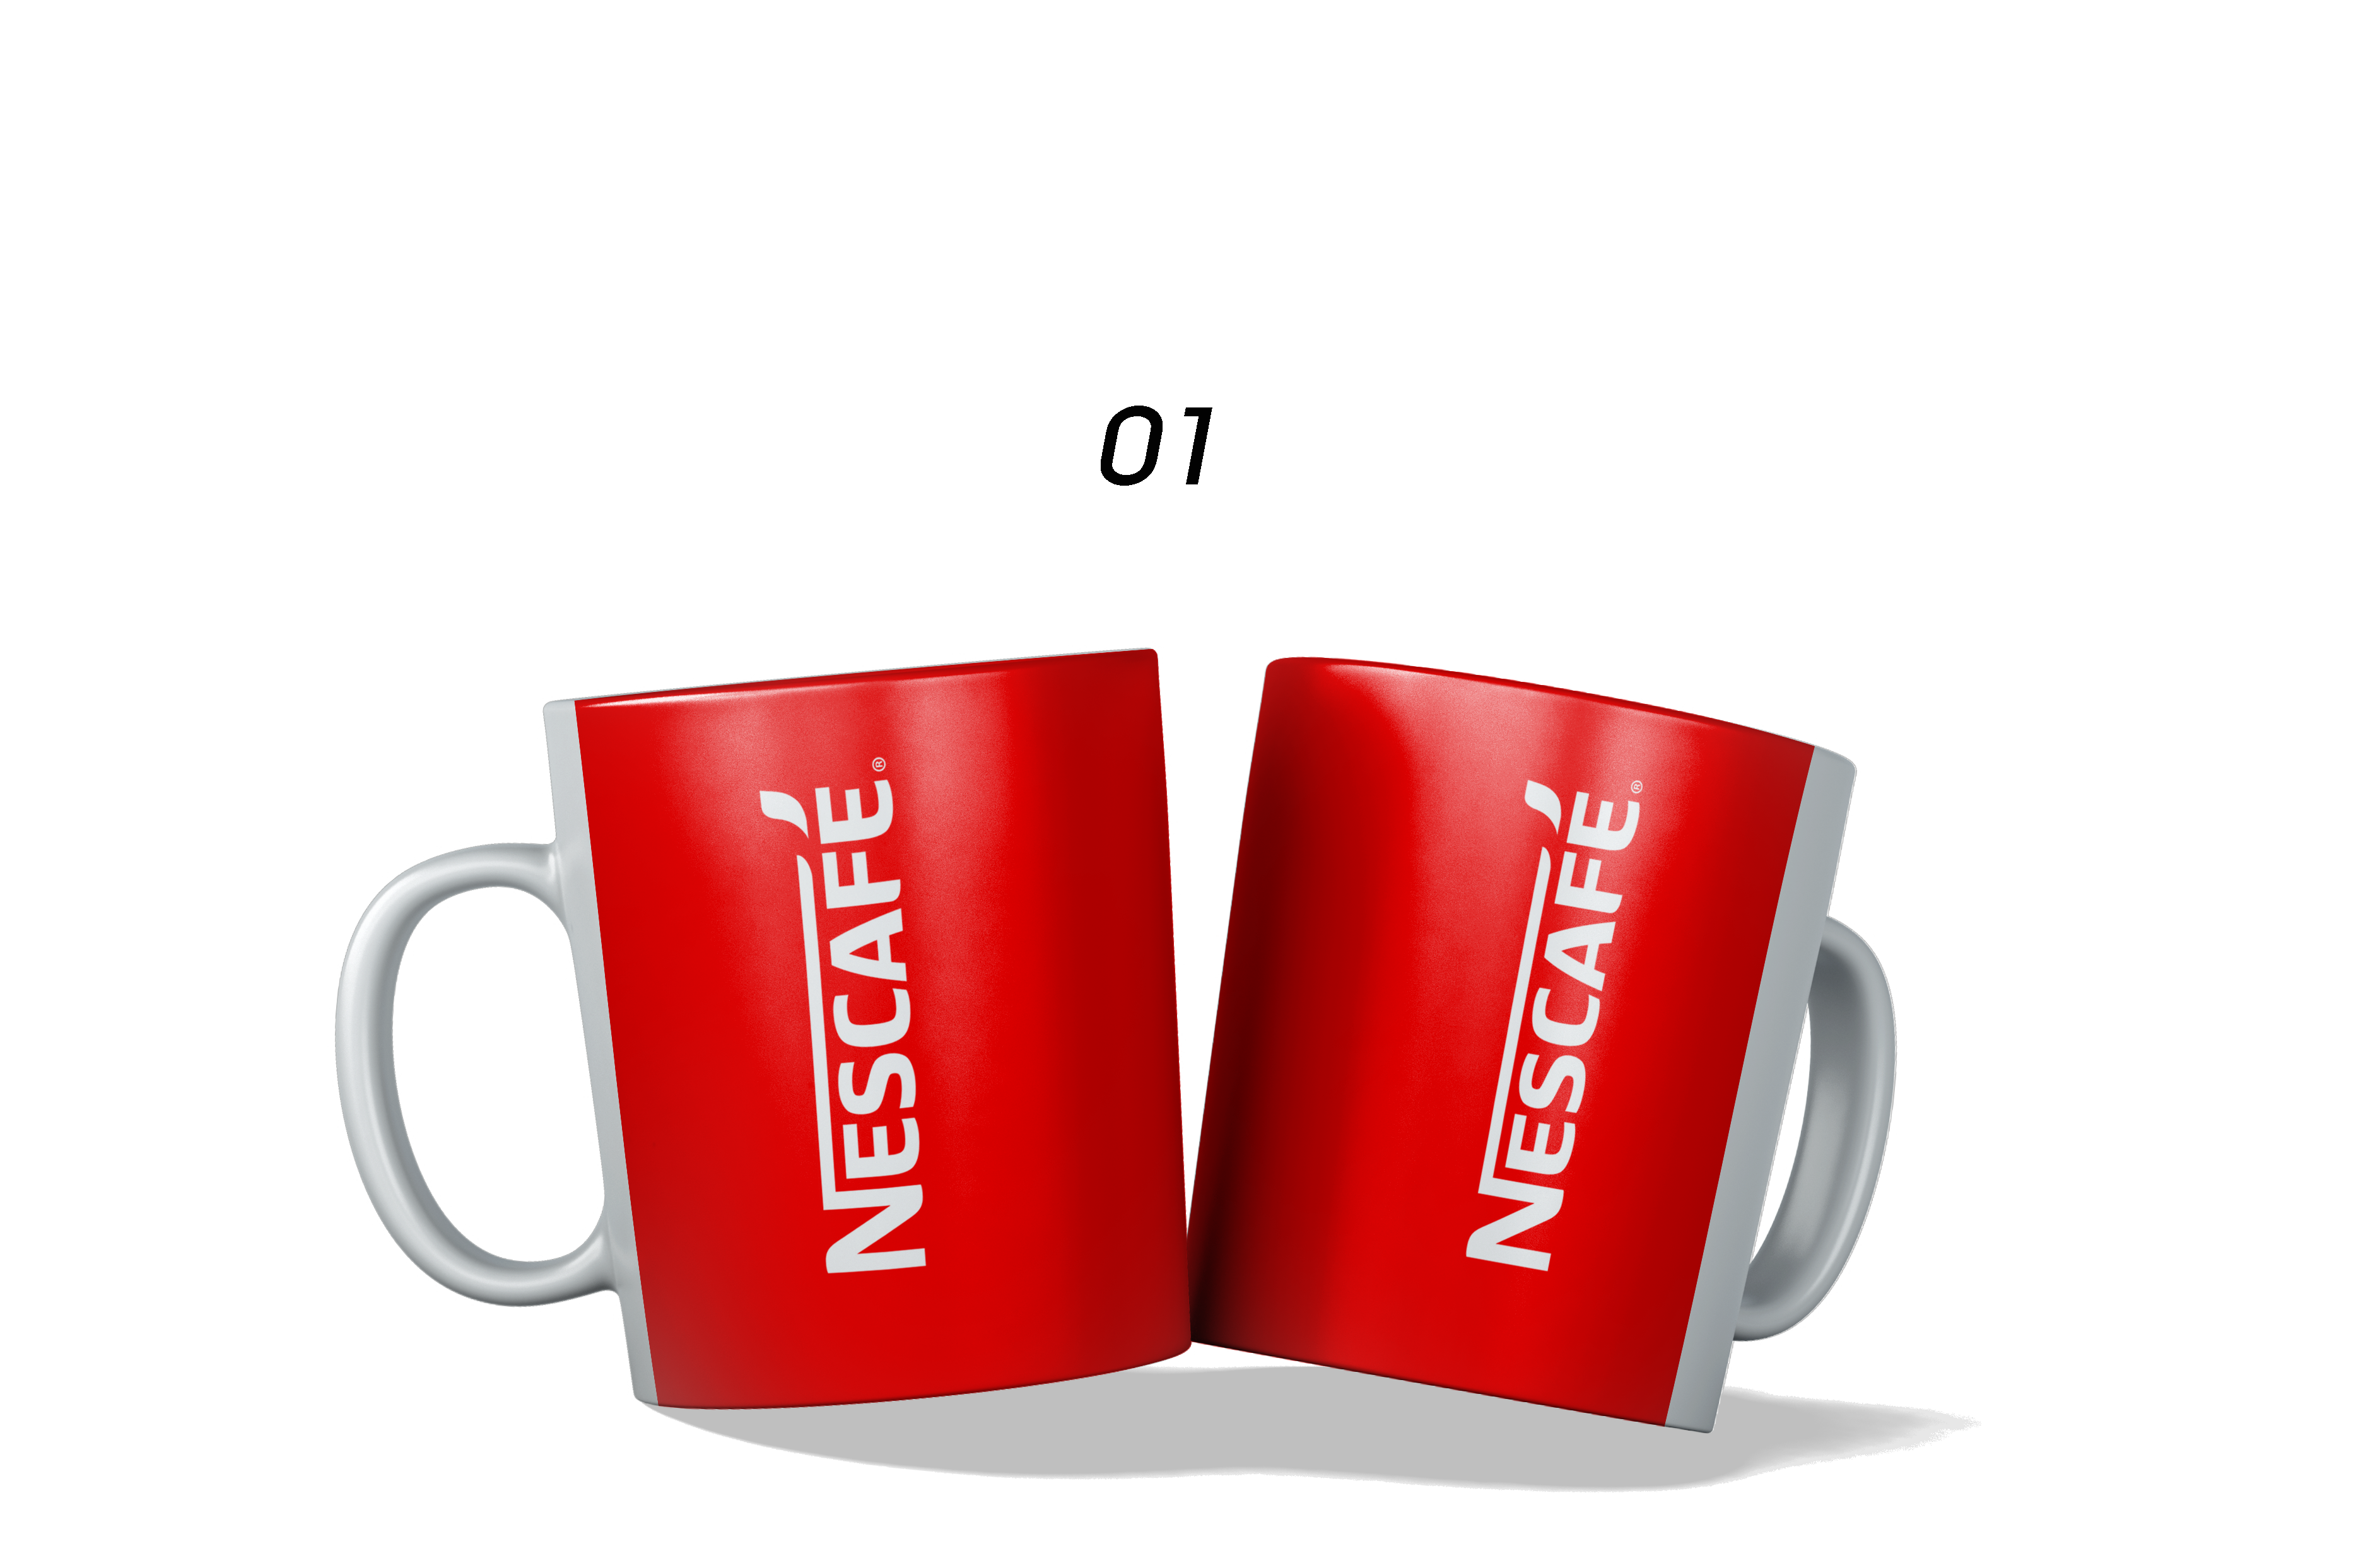 Nescafe Cup